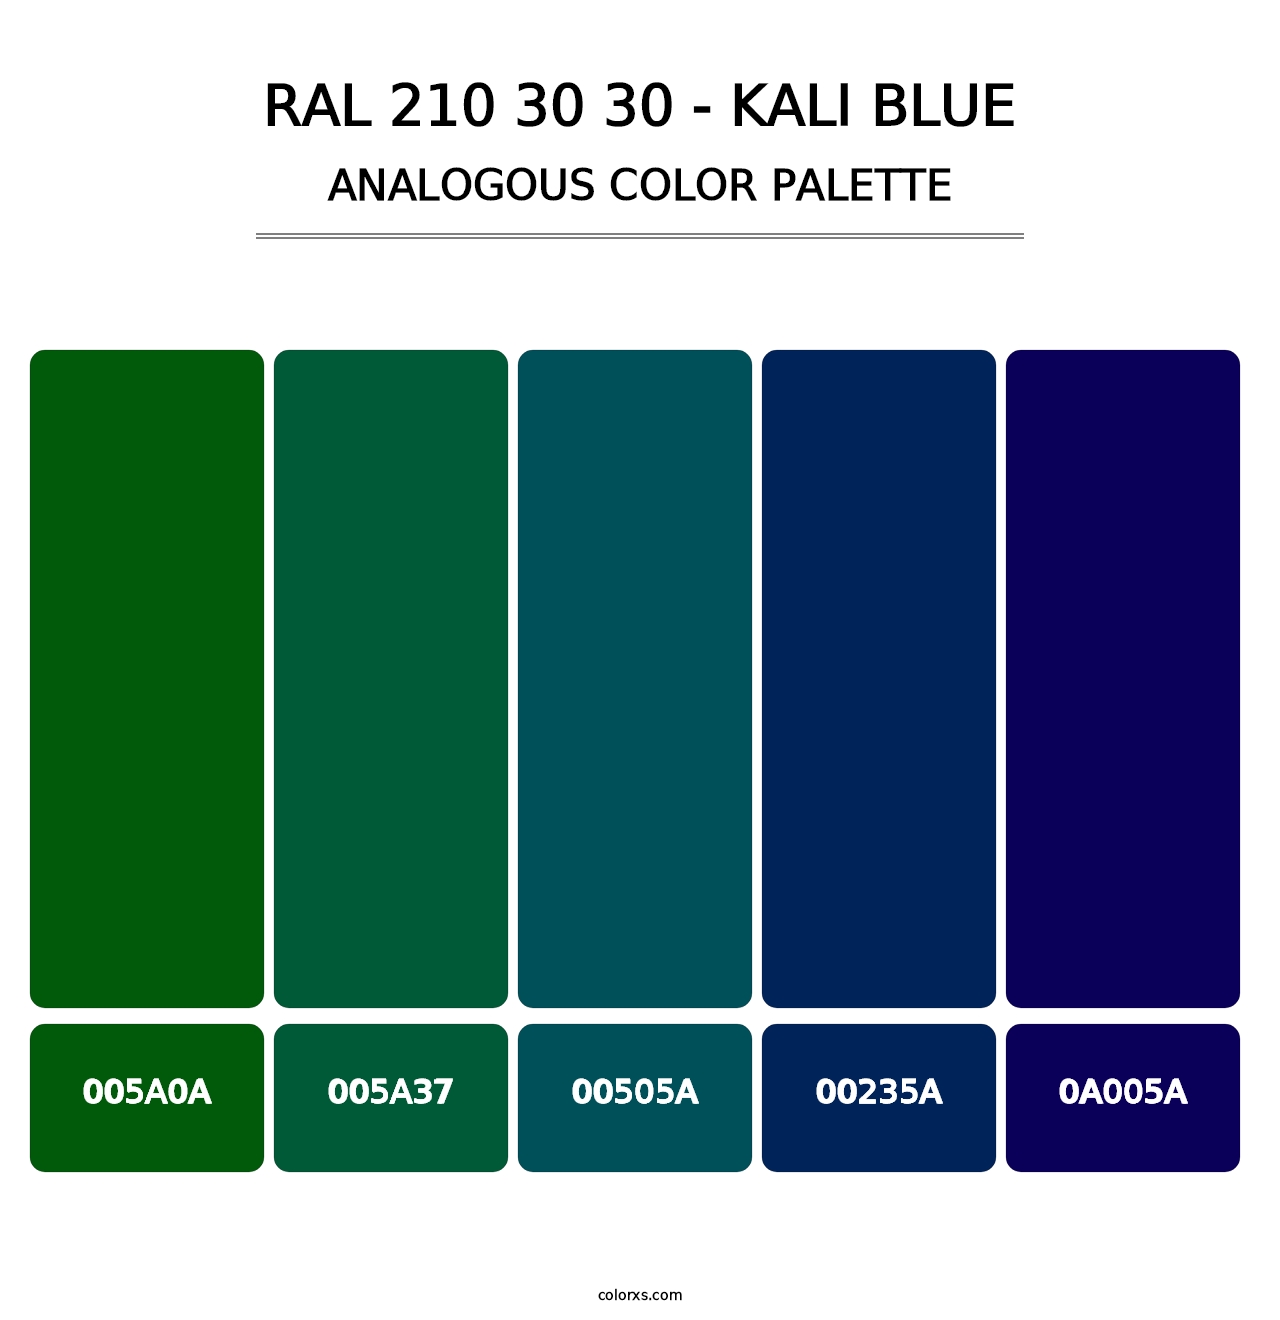 RAL 210 30 30 - Kali Blue - Analogous Color Palette